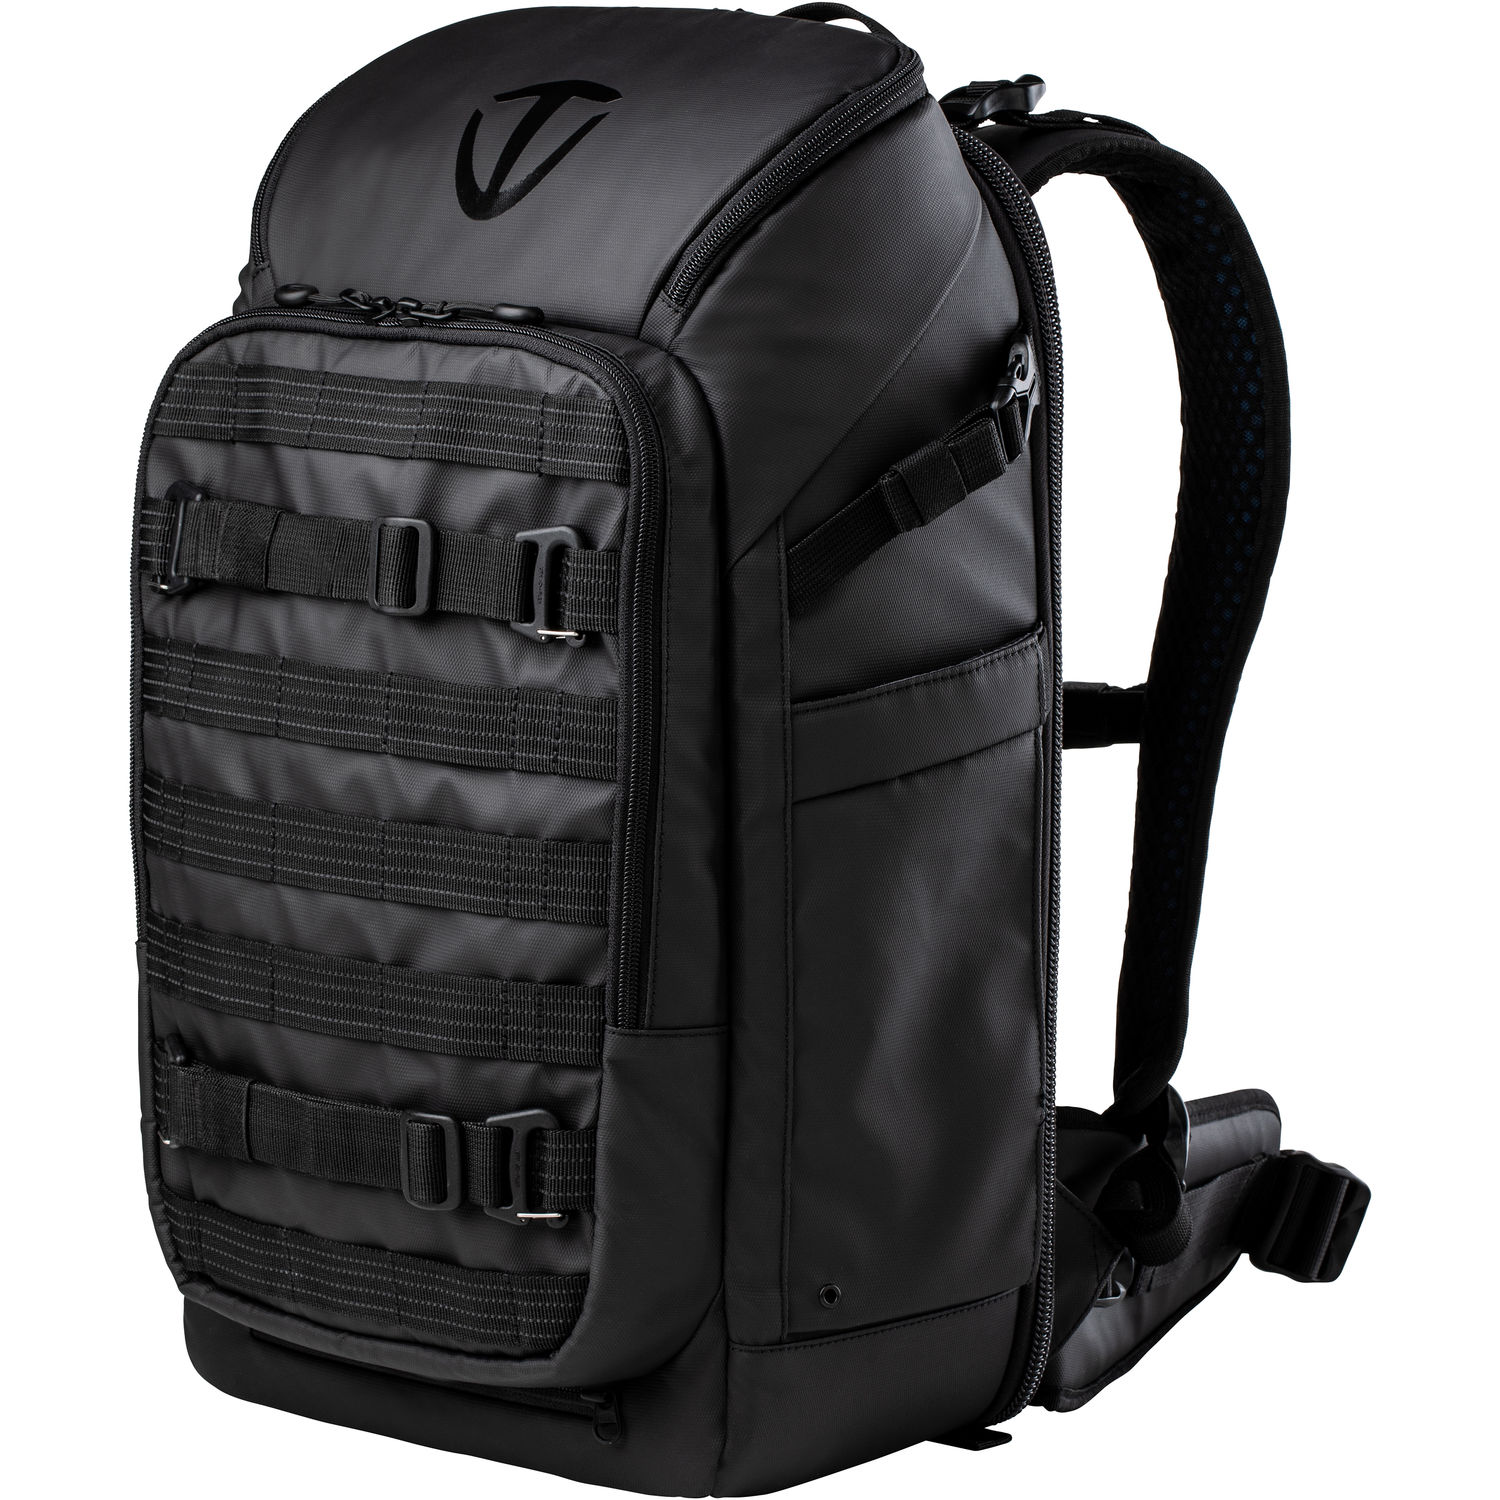 Tenba Axis 637-701 20L Backpack (Black)